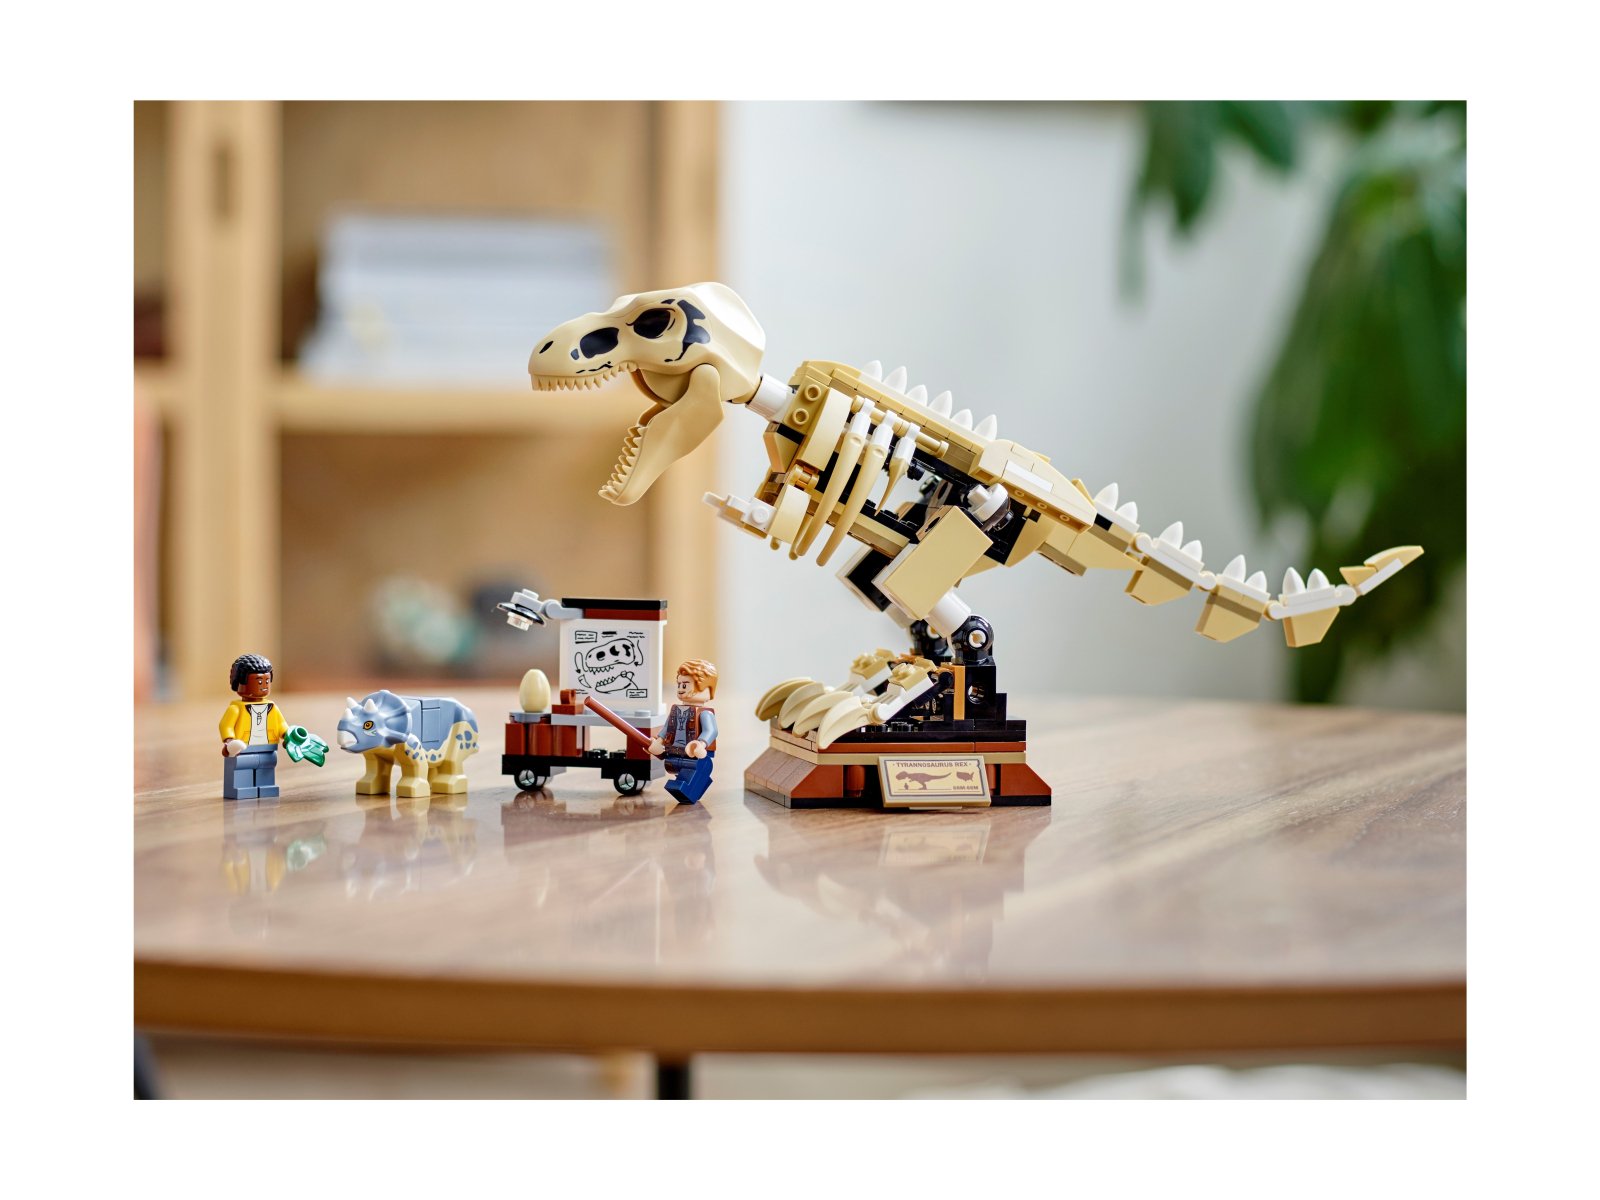 LEGO 76940 Wystawa skamieniałości tyranozaura